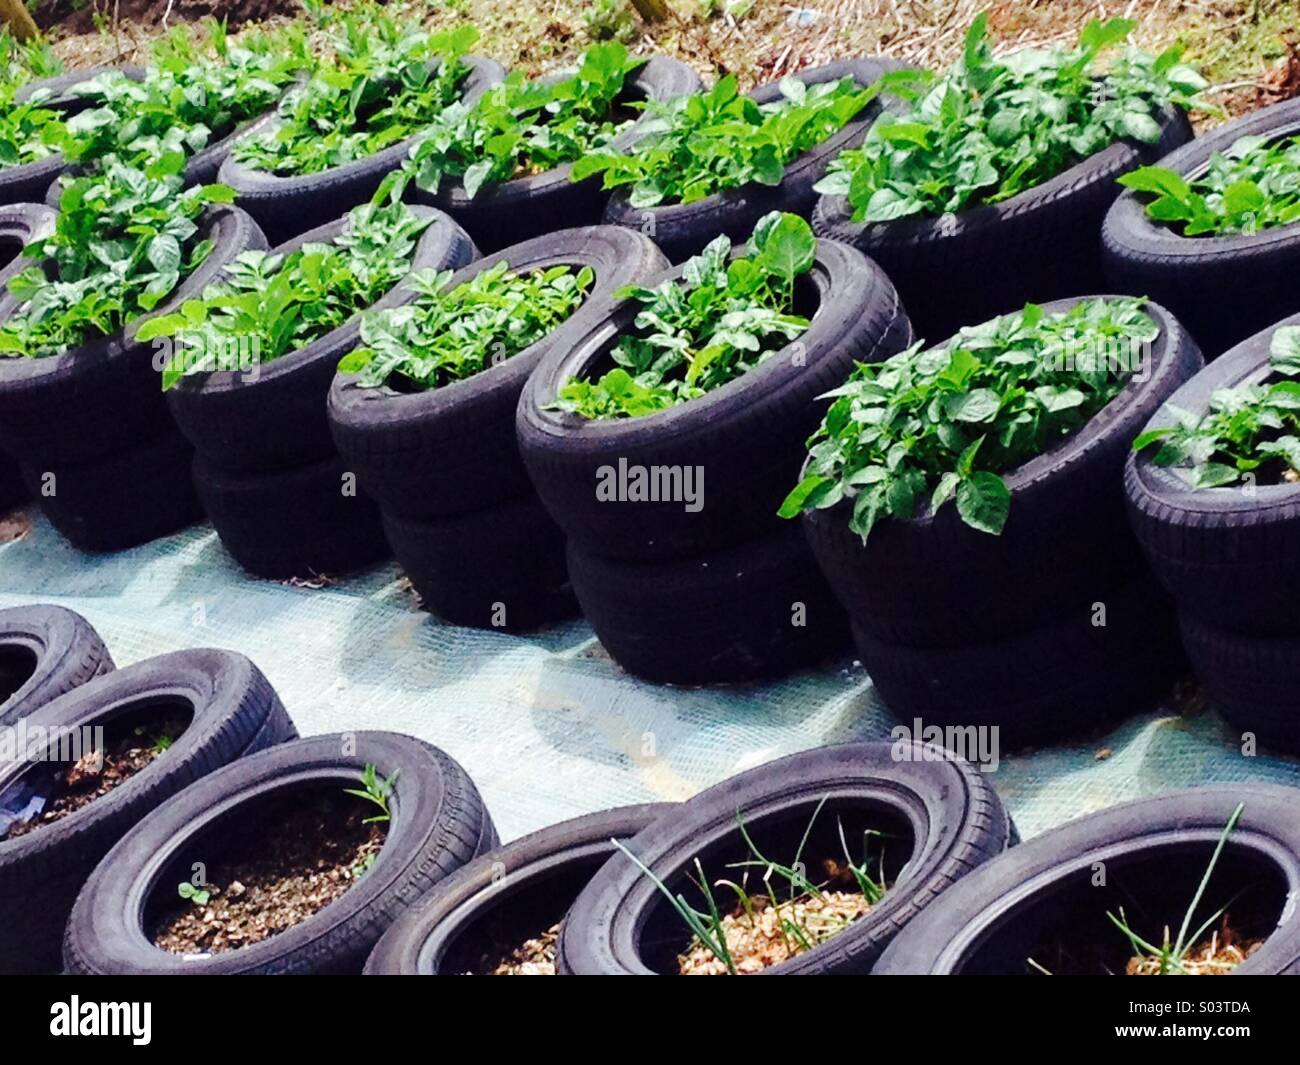 Kartoffeln wachsen im alten Auto-Reifen-Wannen Stockfotografie - Alamy